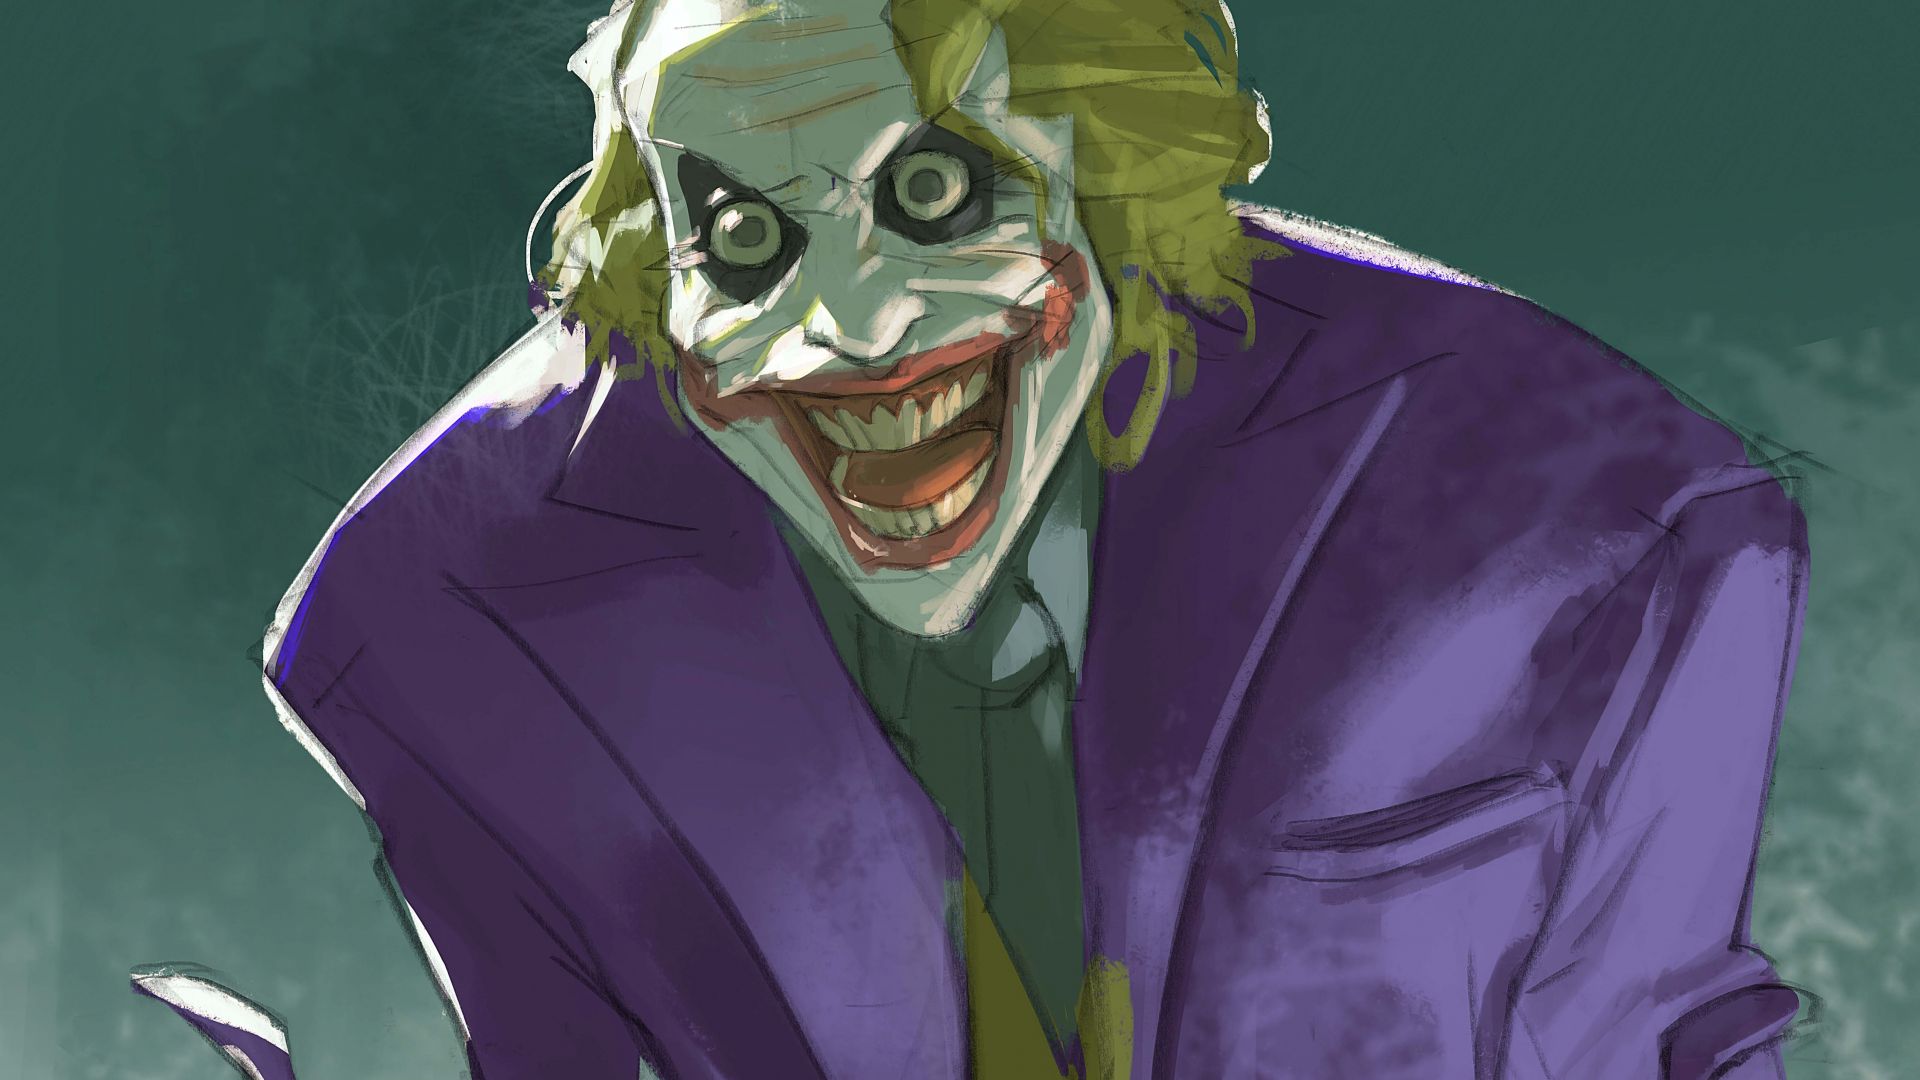 Desktop Wallpaper Joker, Villain, The Dark Knight, Fan Art, 5k, Hd Image,  Picture, Background, 5c7420